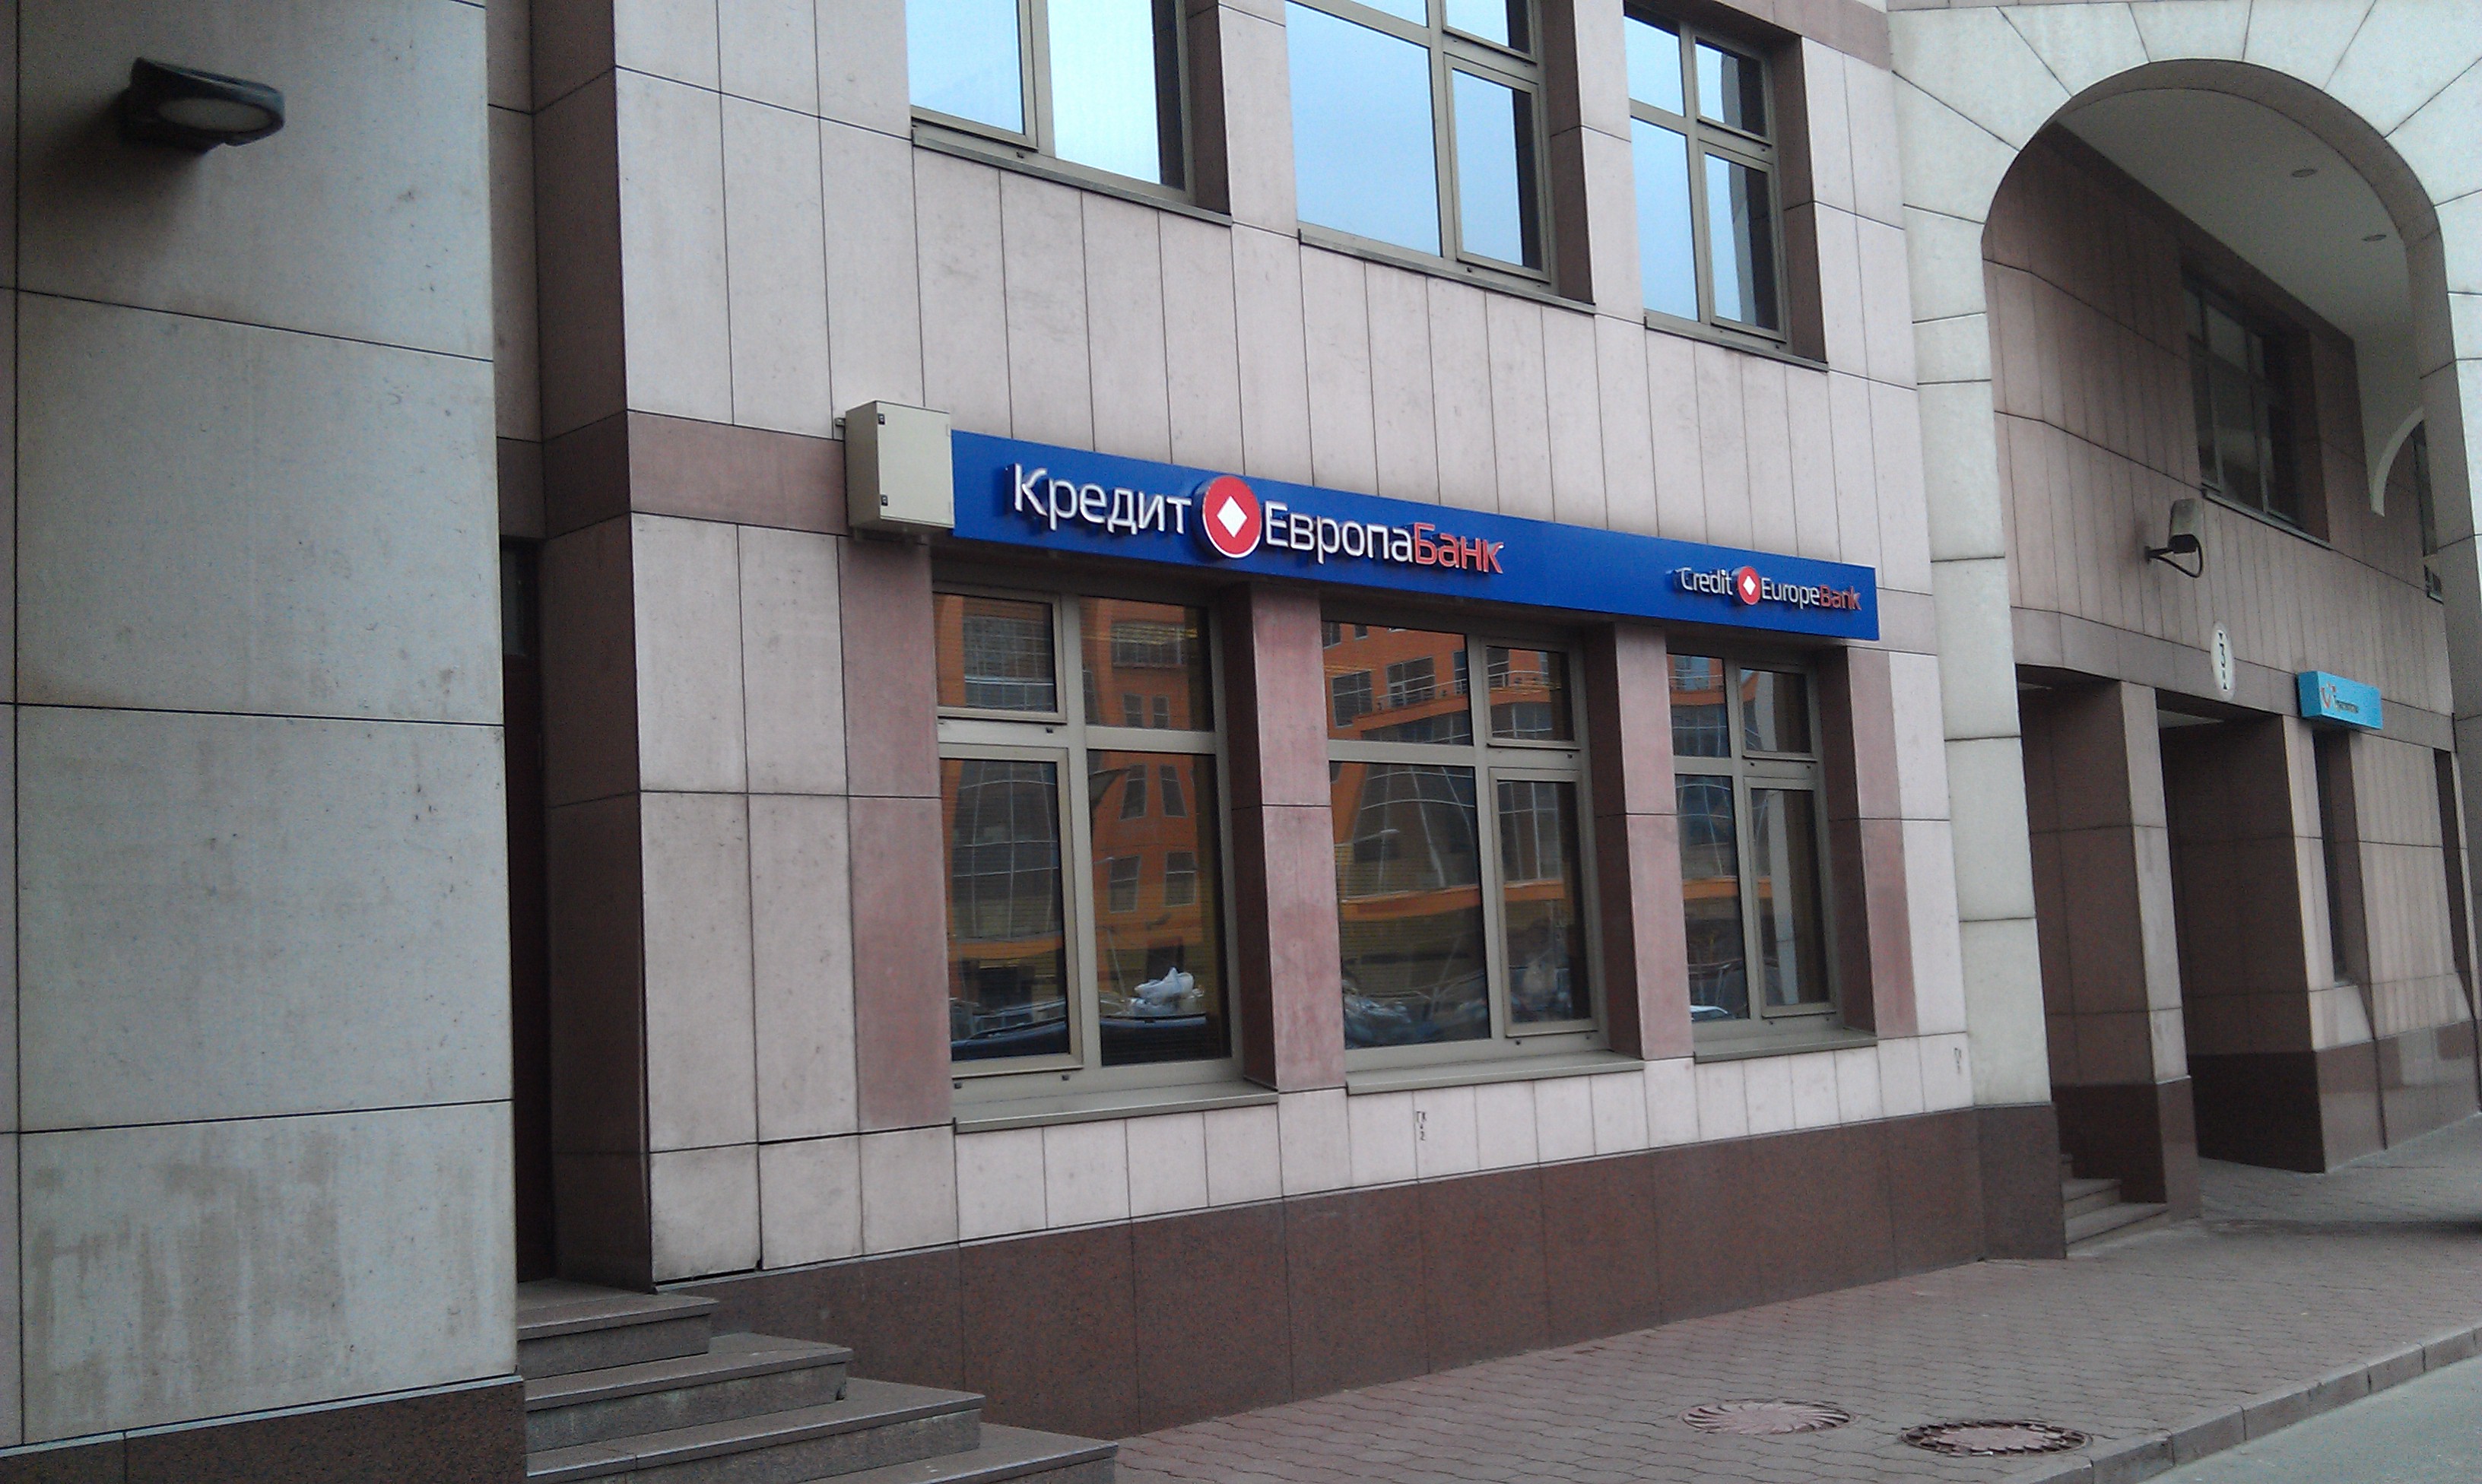 Кредит европа ру. Европа банк. Банк Новосибирск. Кредит Европа банк фото. Отделение банка кредит Европа.